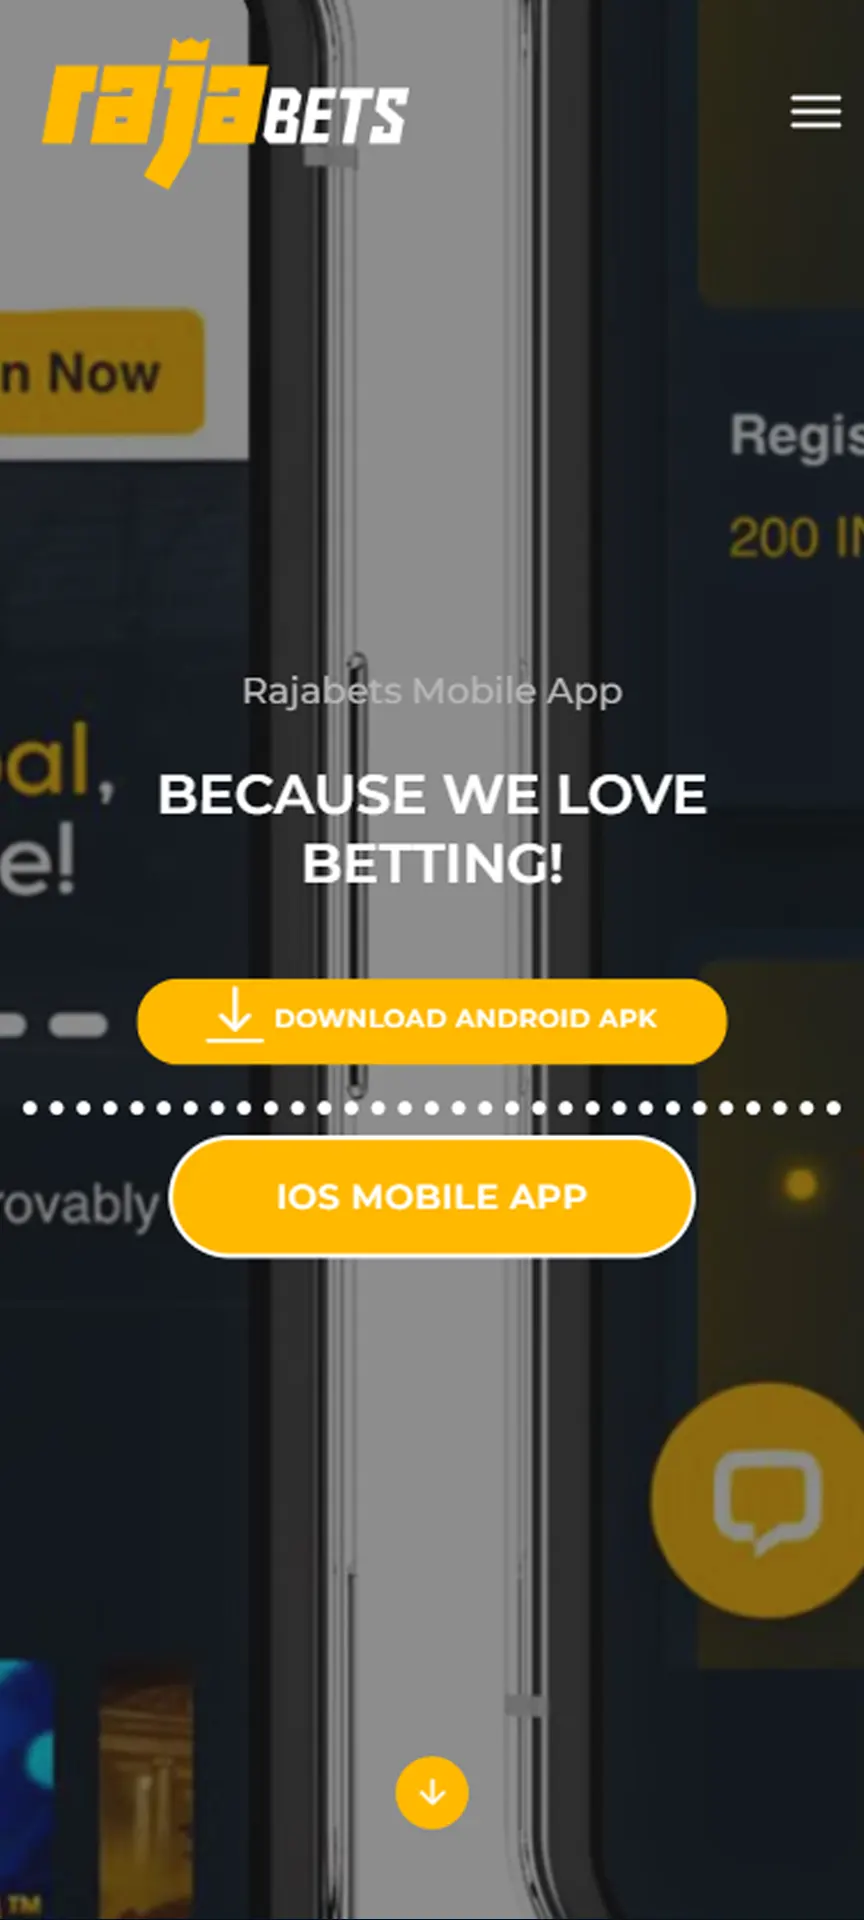 Inicie o procedimento de download do aplicativo Rajabets iOS.